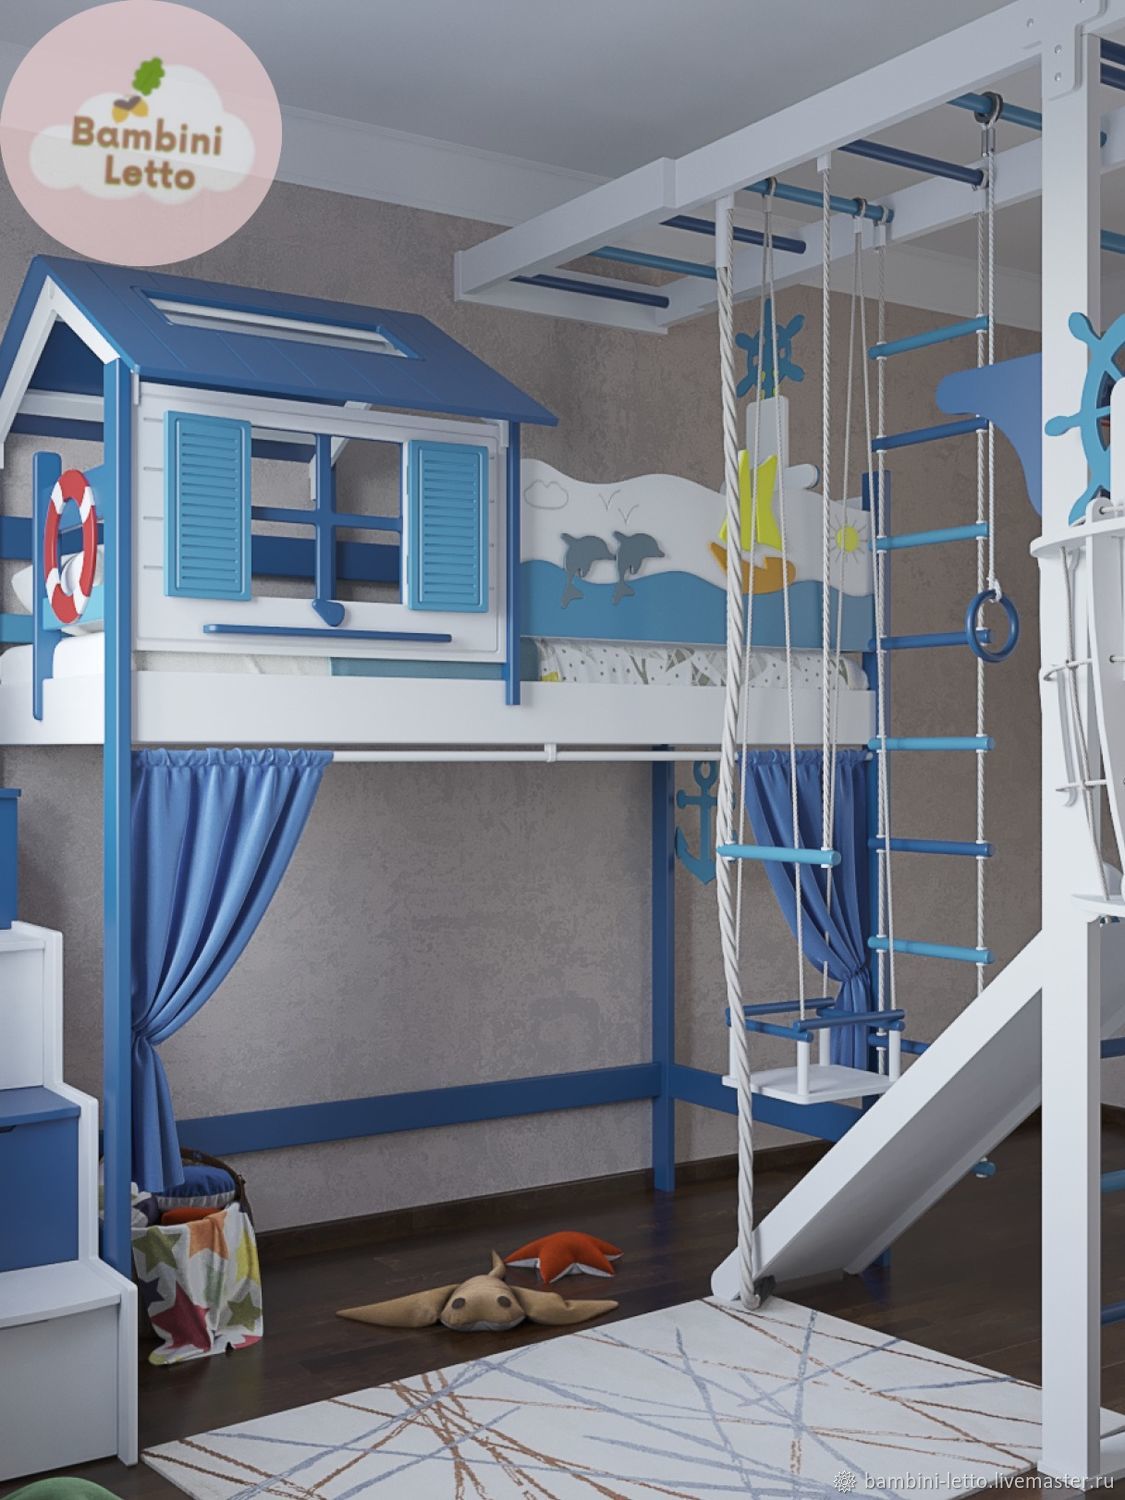 Дизайн детской в морском стиле, или декор комнаты для юных мечтателей и путешественников